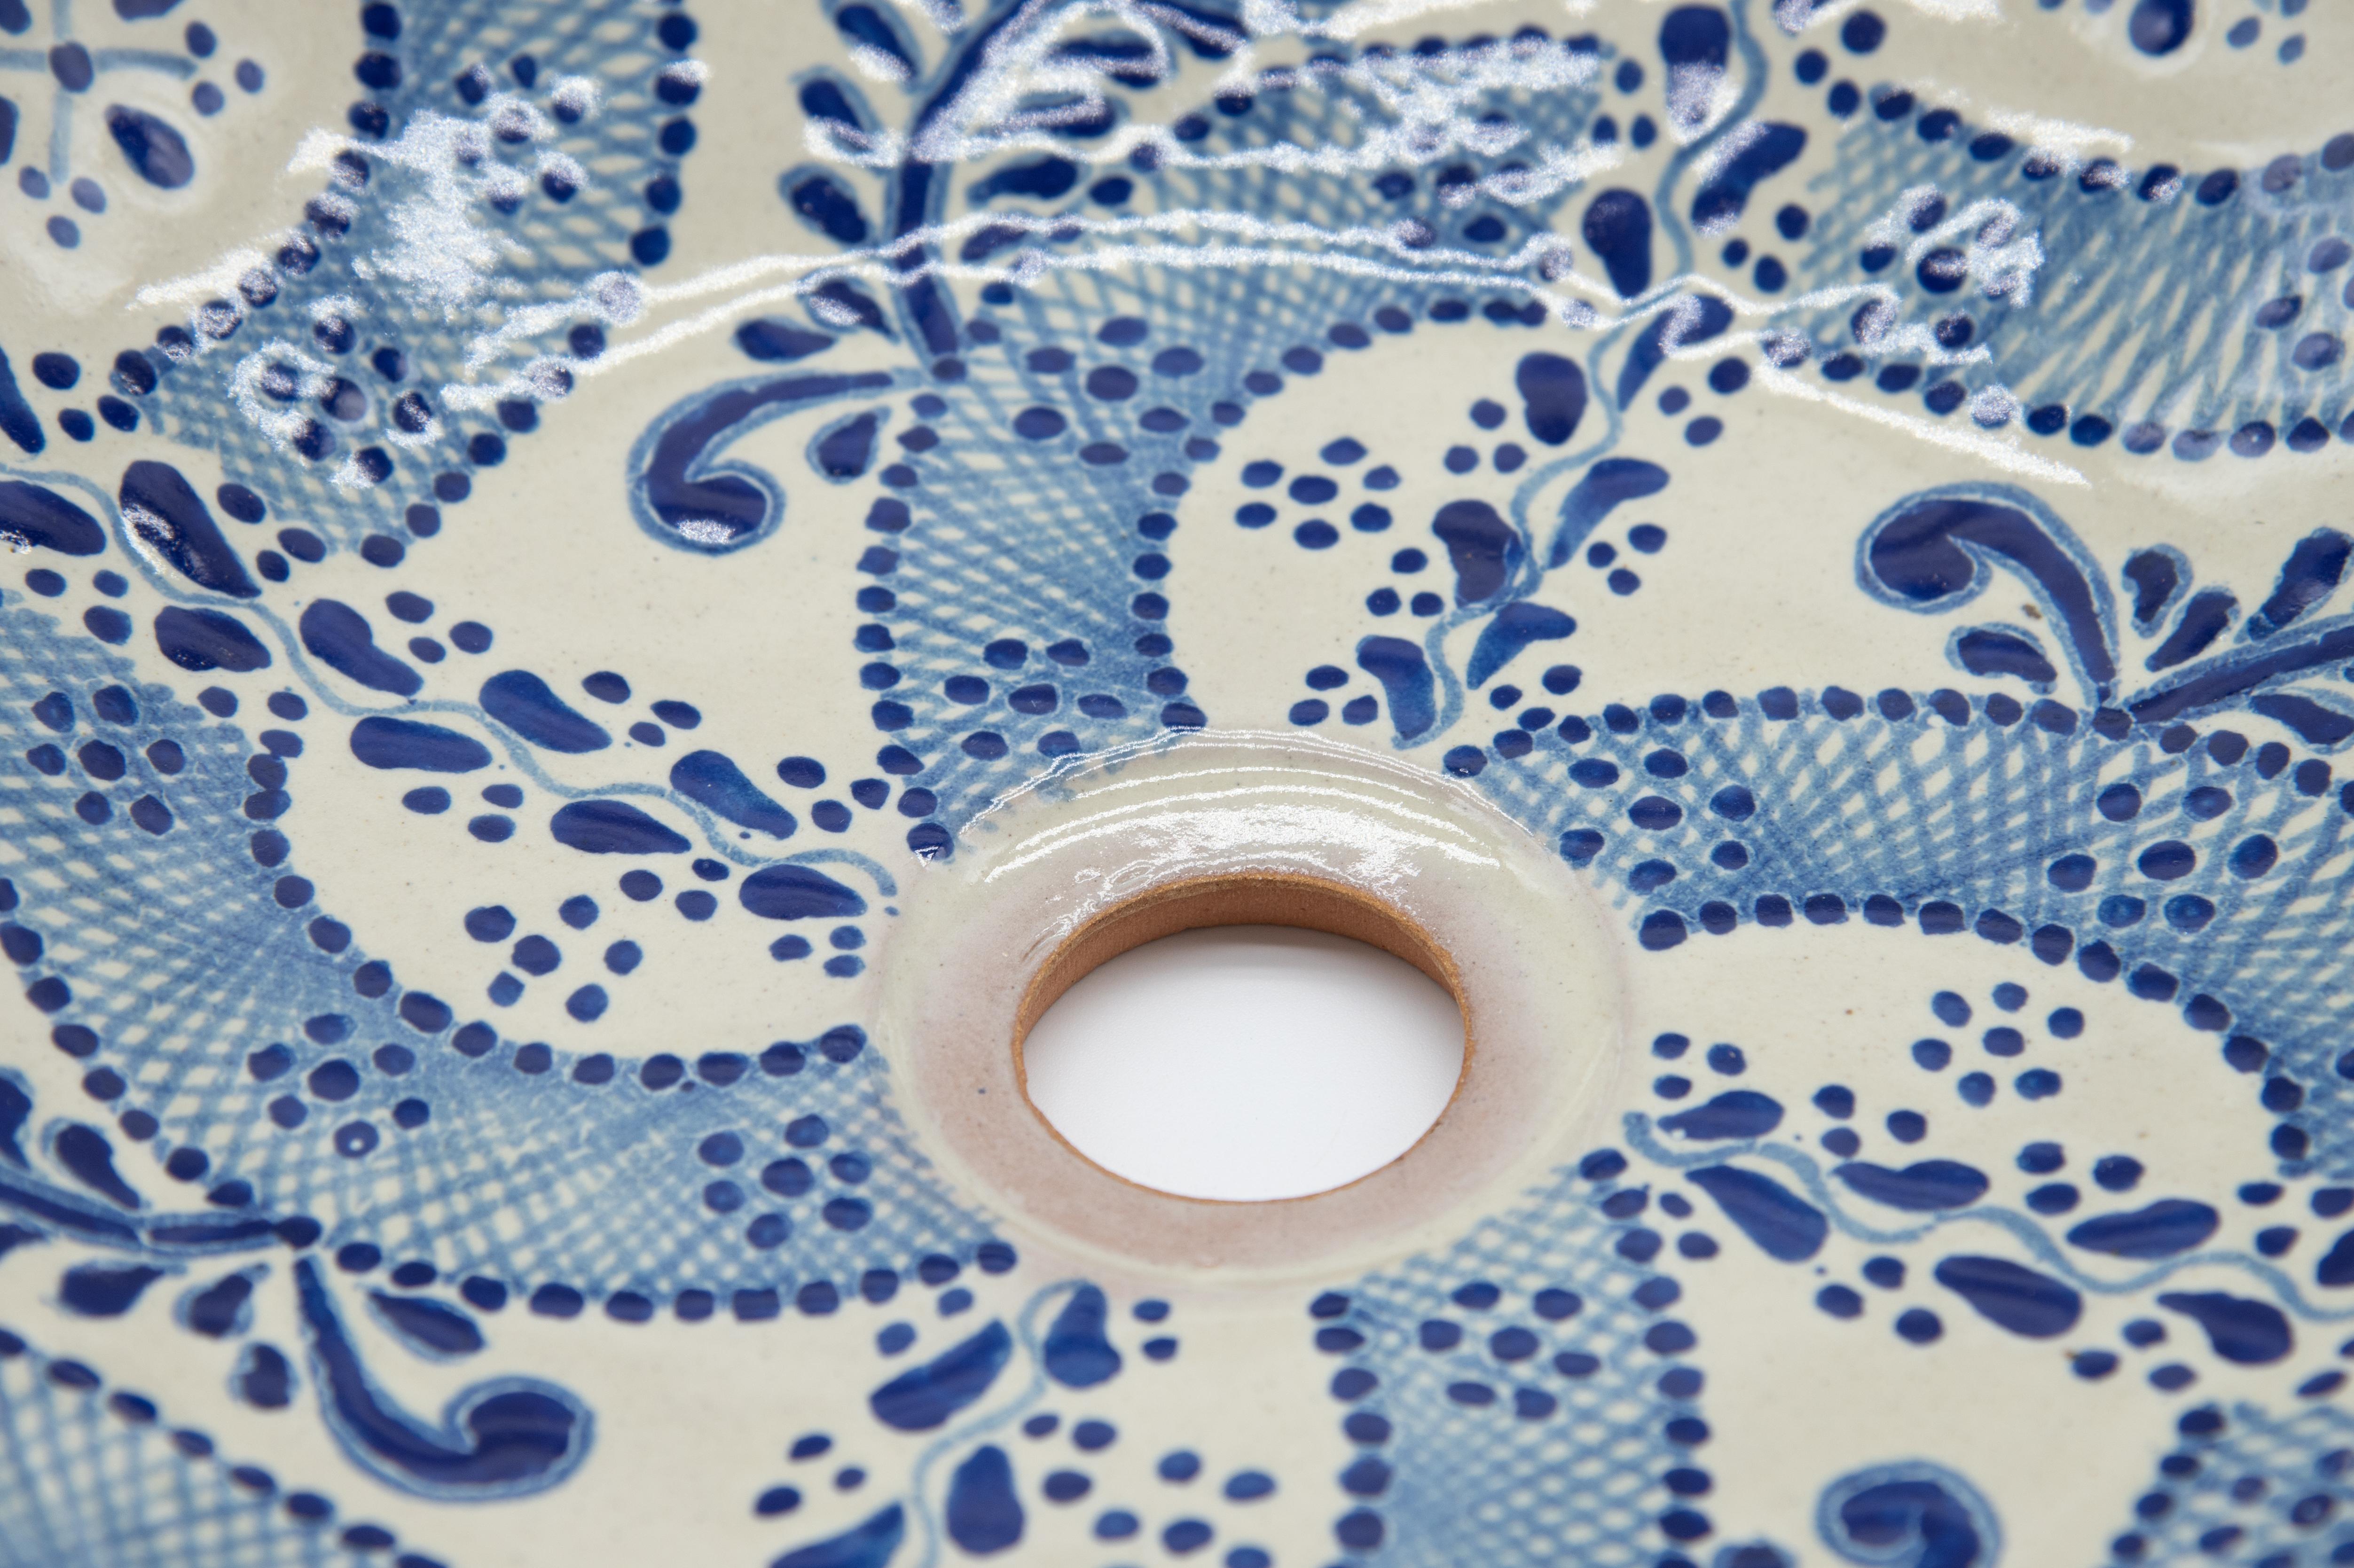 Elegantes weiß-blaues Waschbecken, hergestellt in der Talavera-Technik. Der Künstler Cesar Torres porträtiert die koloniale Kunst Mexikos. 

Die Talavera ist nicht nur eine einfache bemalte Keramik: Ihre exquisite Dekoration ist das Ergebnis eines